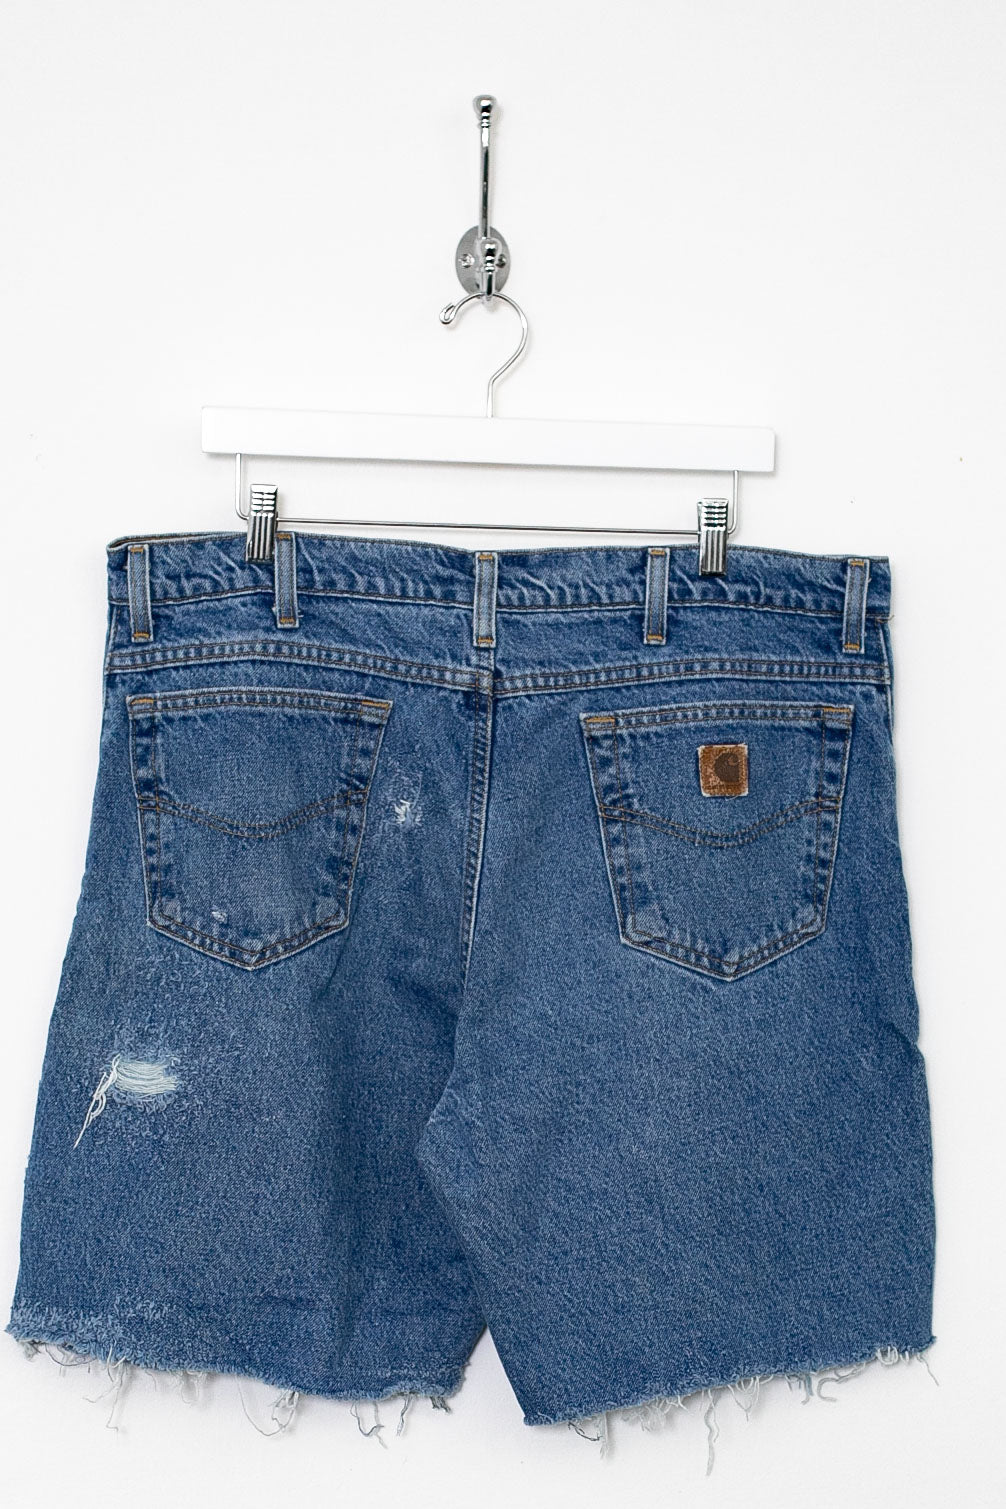 00s Carhartt Cut Down Jean Shorts (XL)